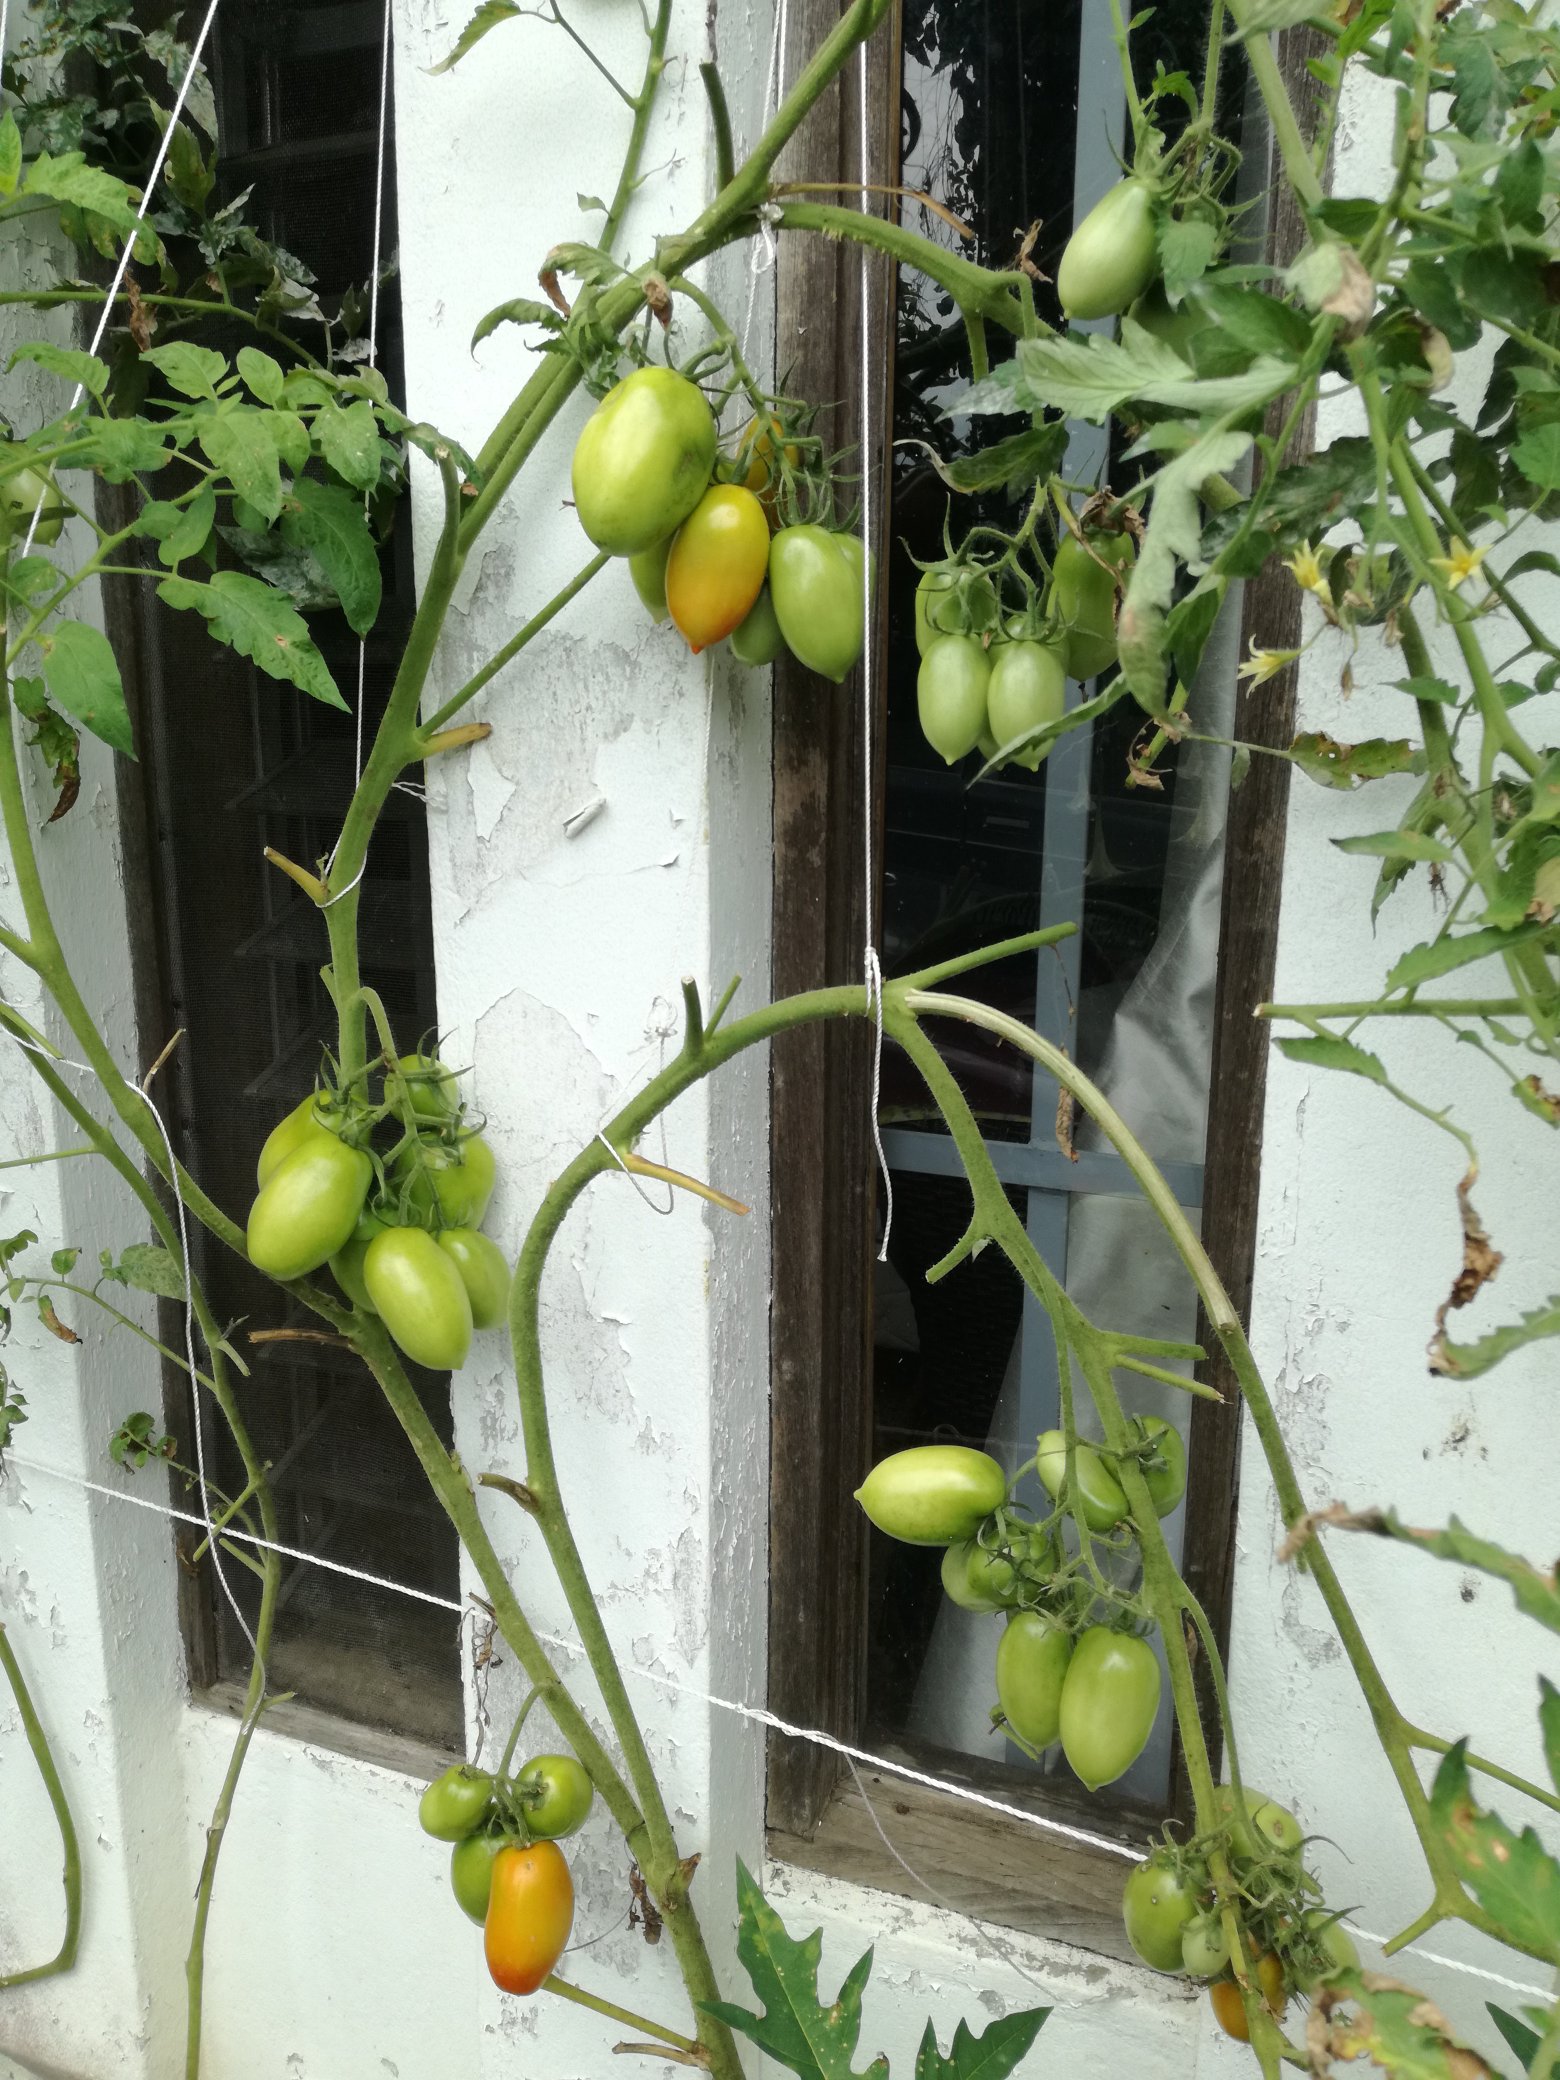 Pokok tomato